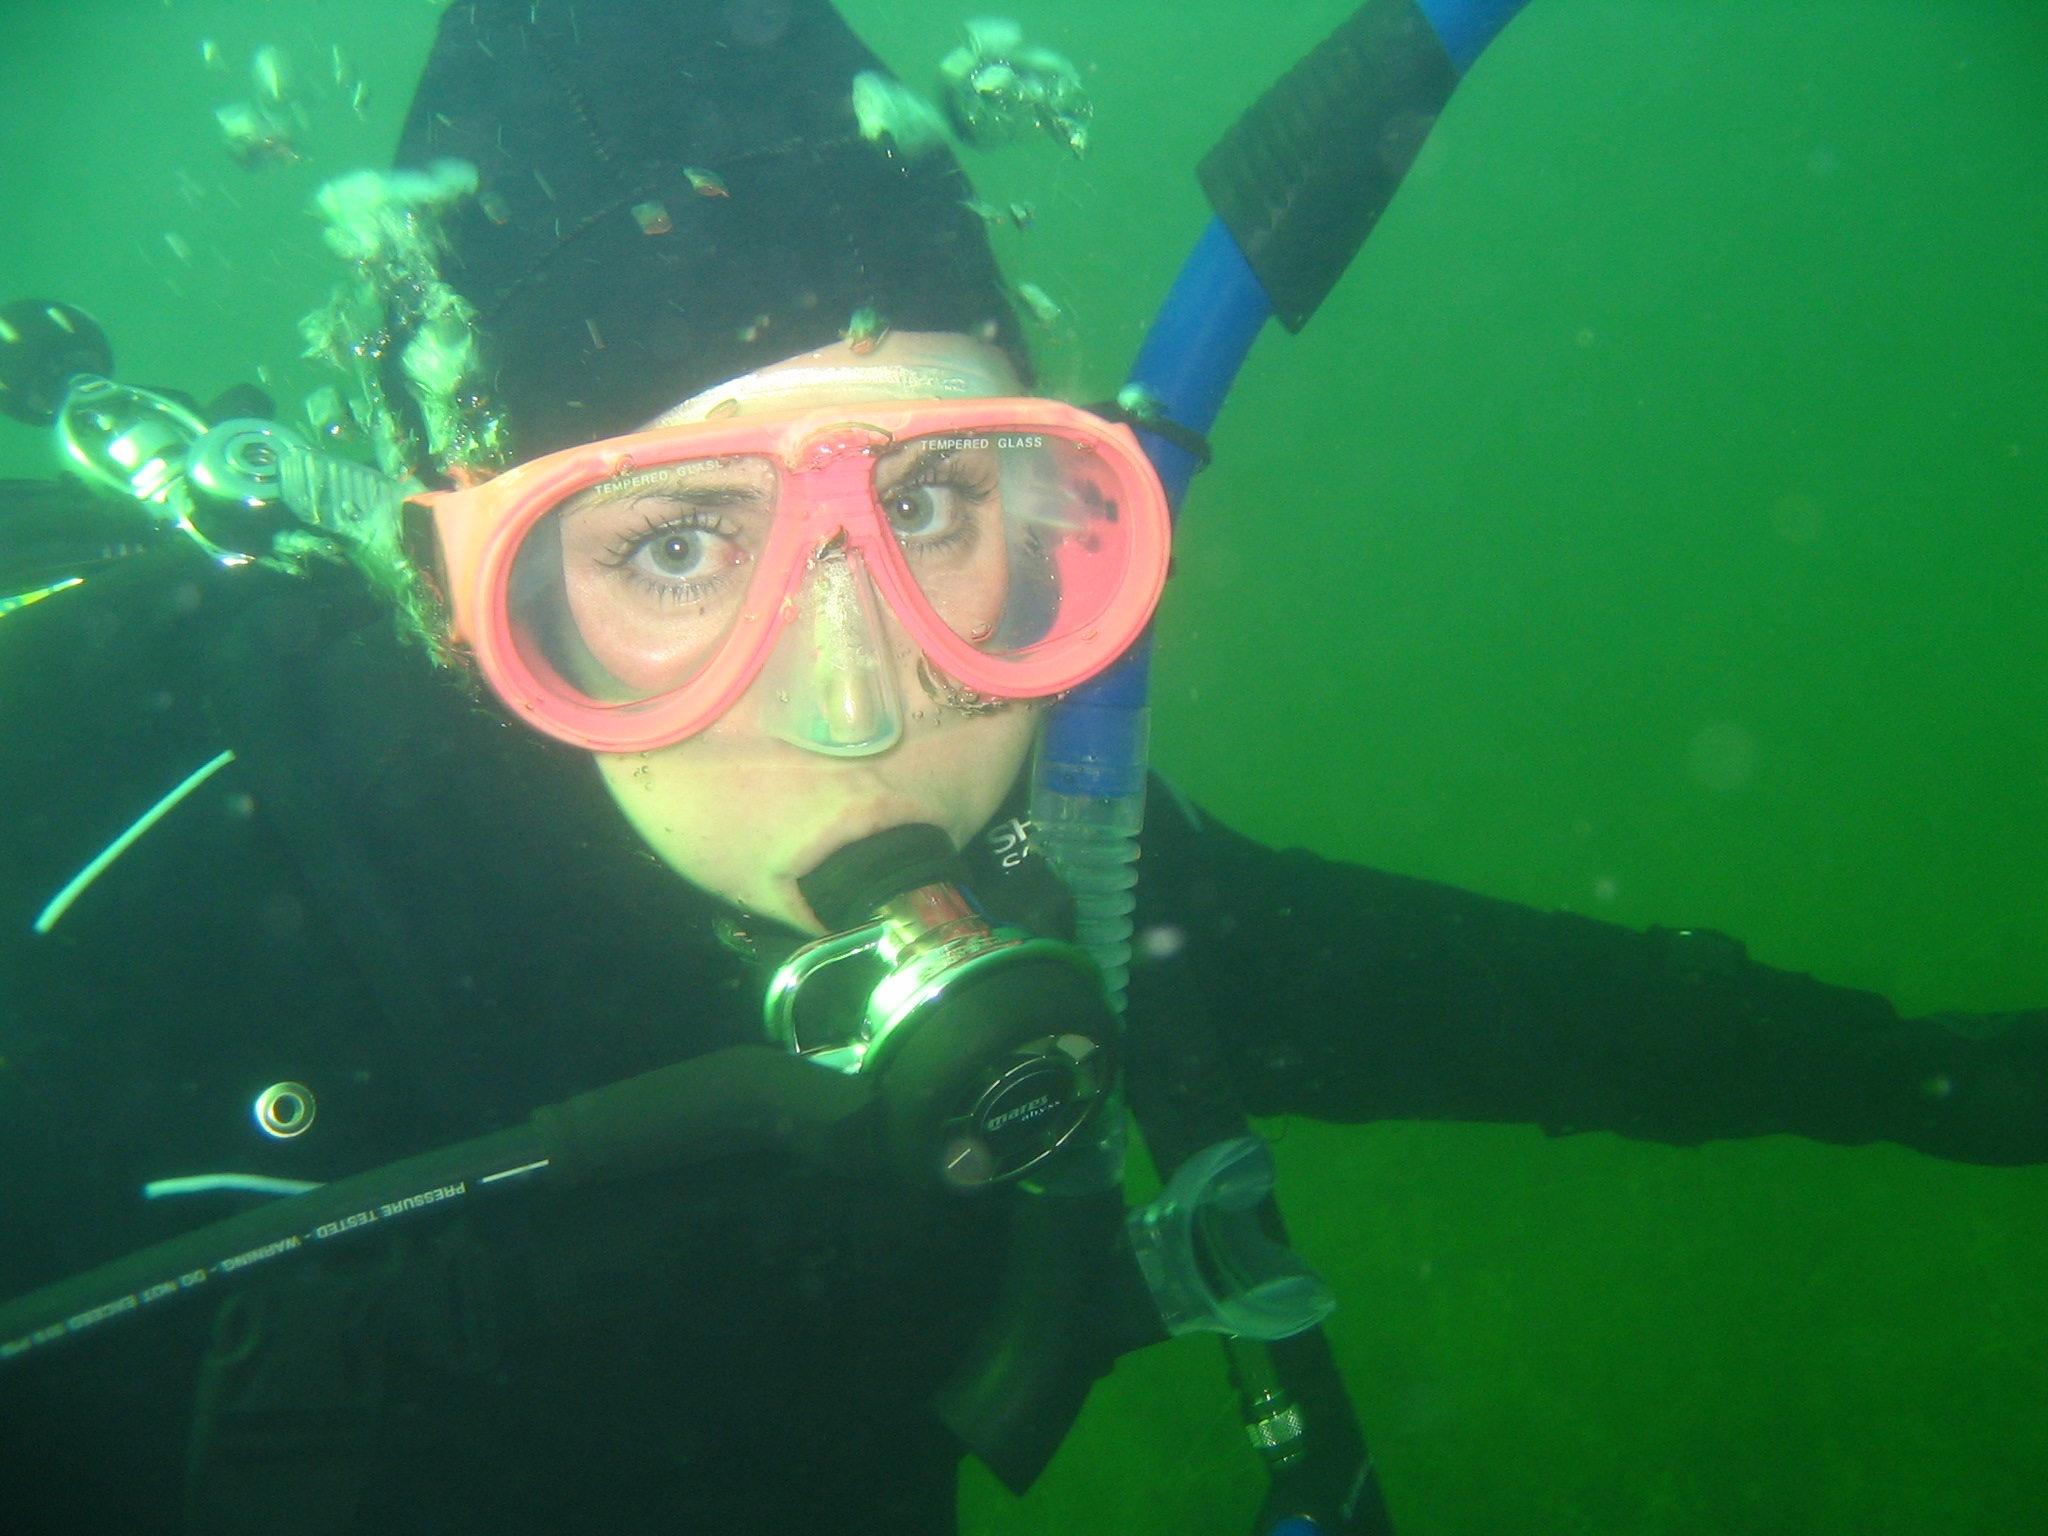 Me diving in freah water quarry